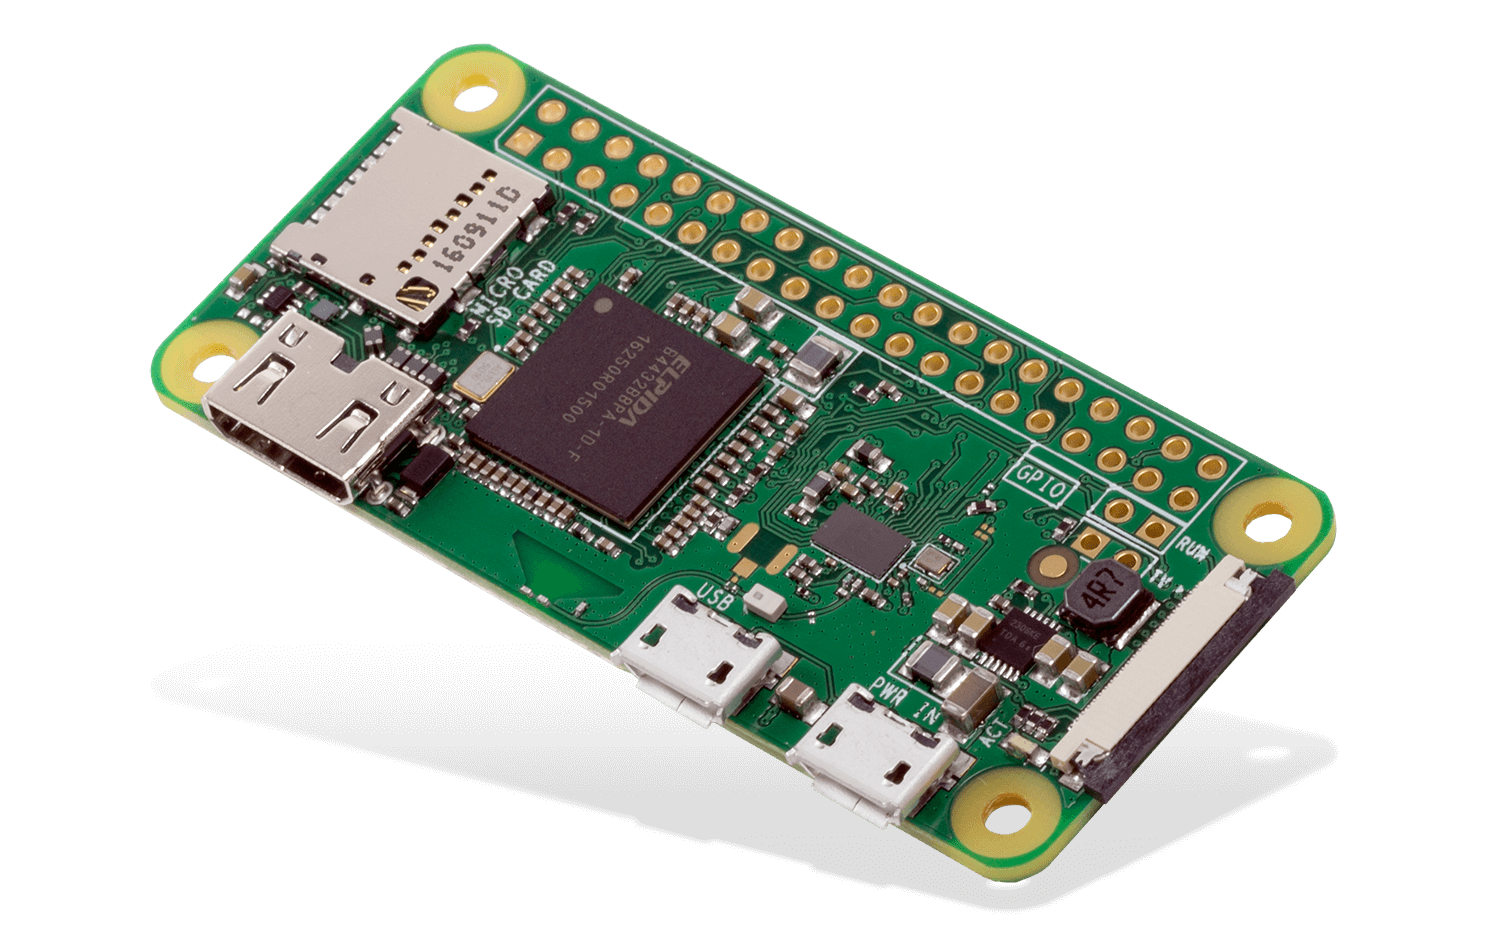 Raspberry-Pi-zero-wireless-board-details